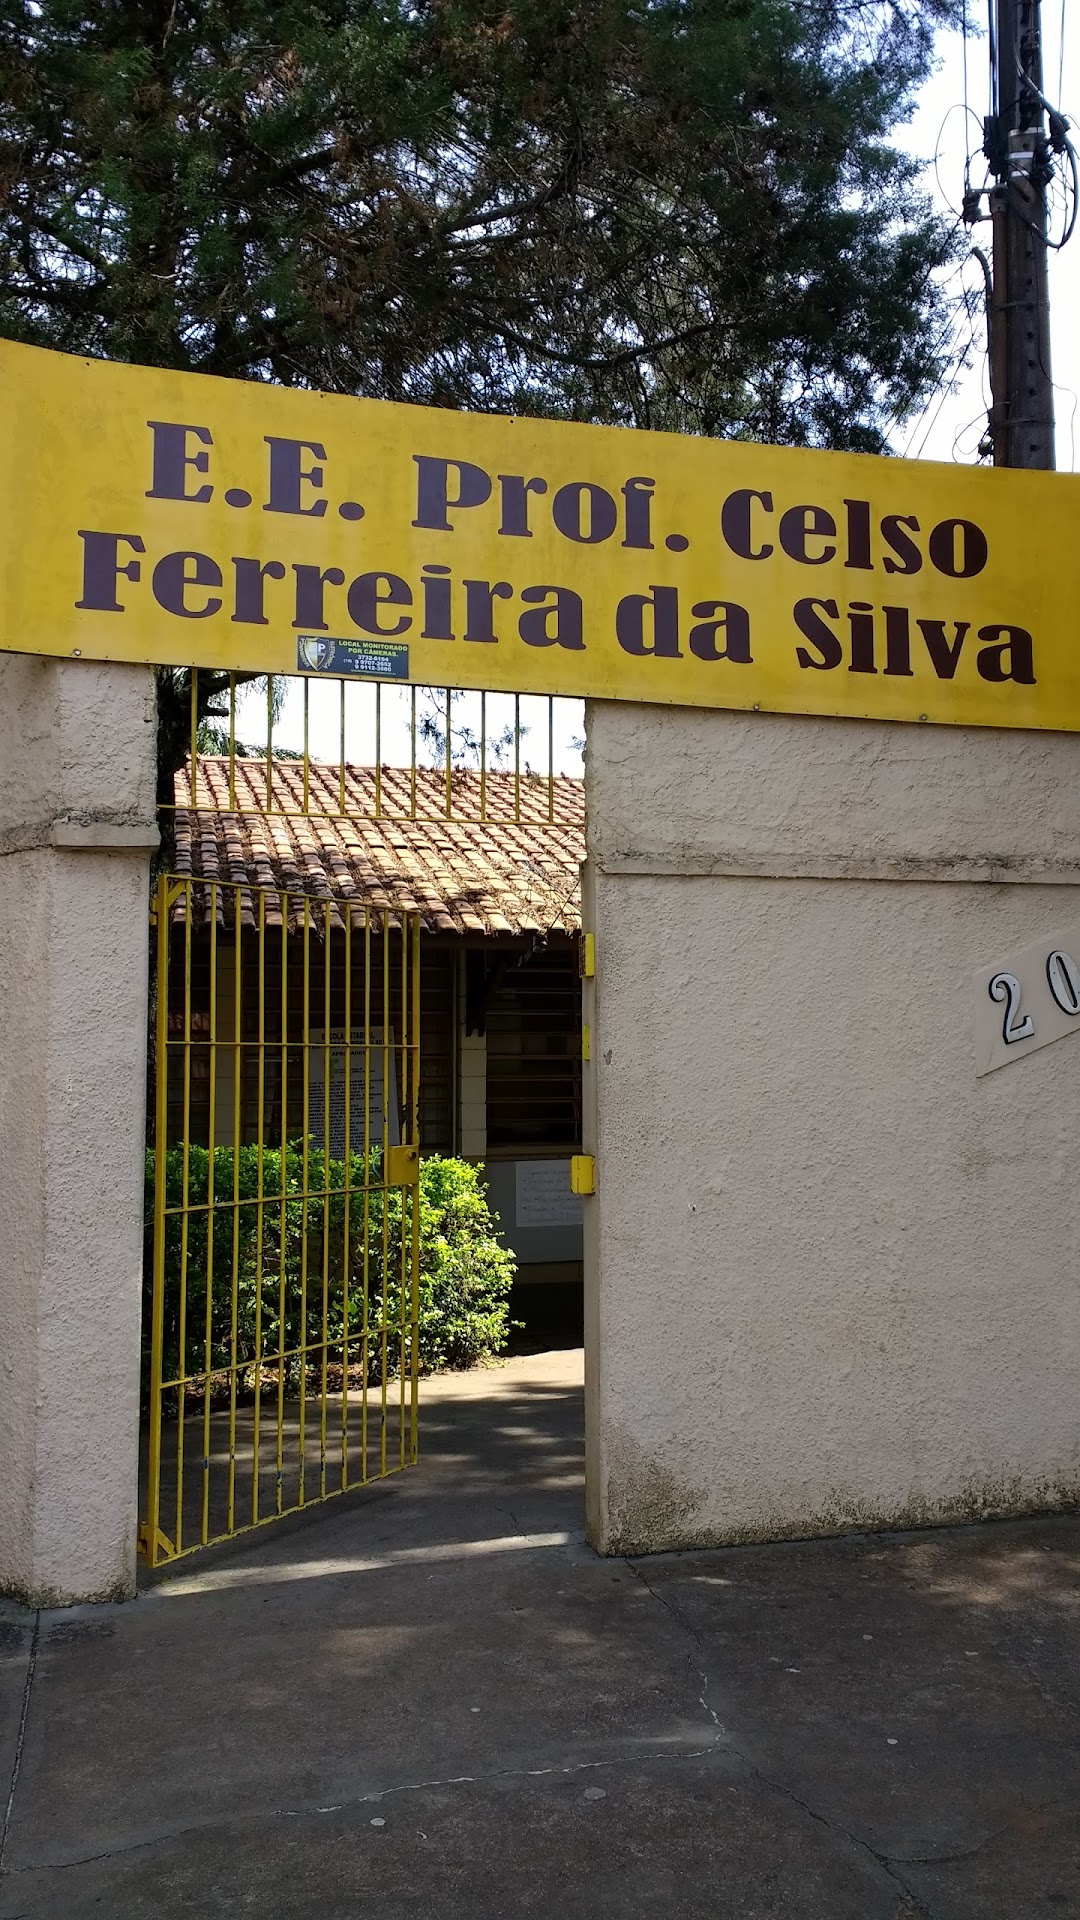 Celso Ferreira da Silva